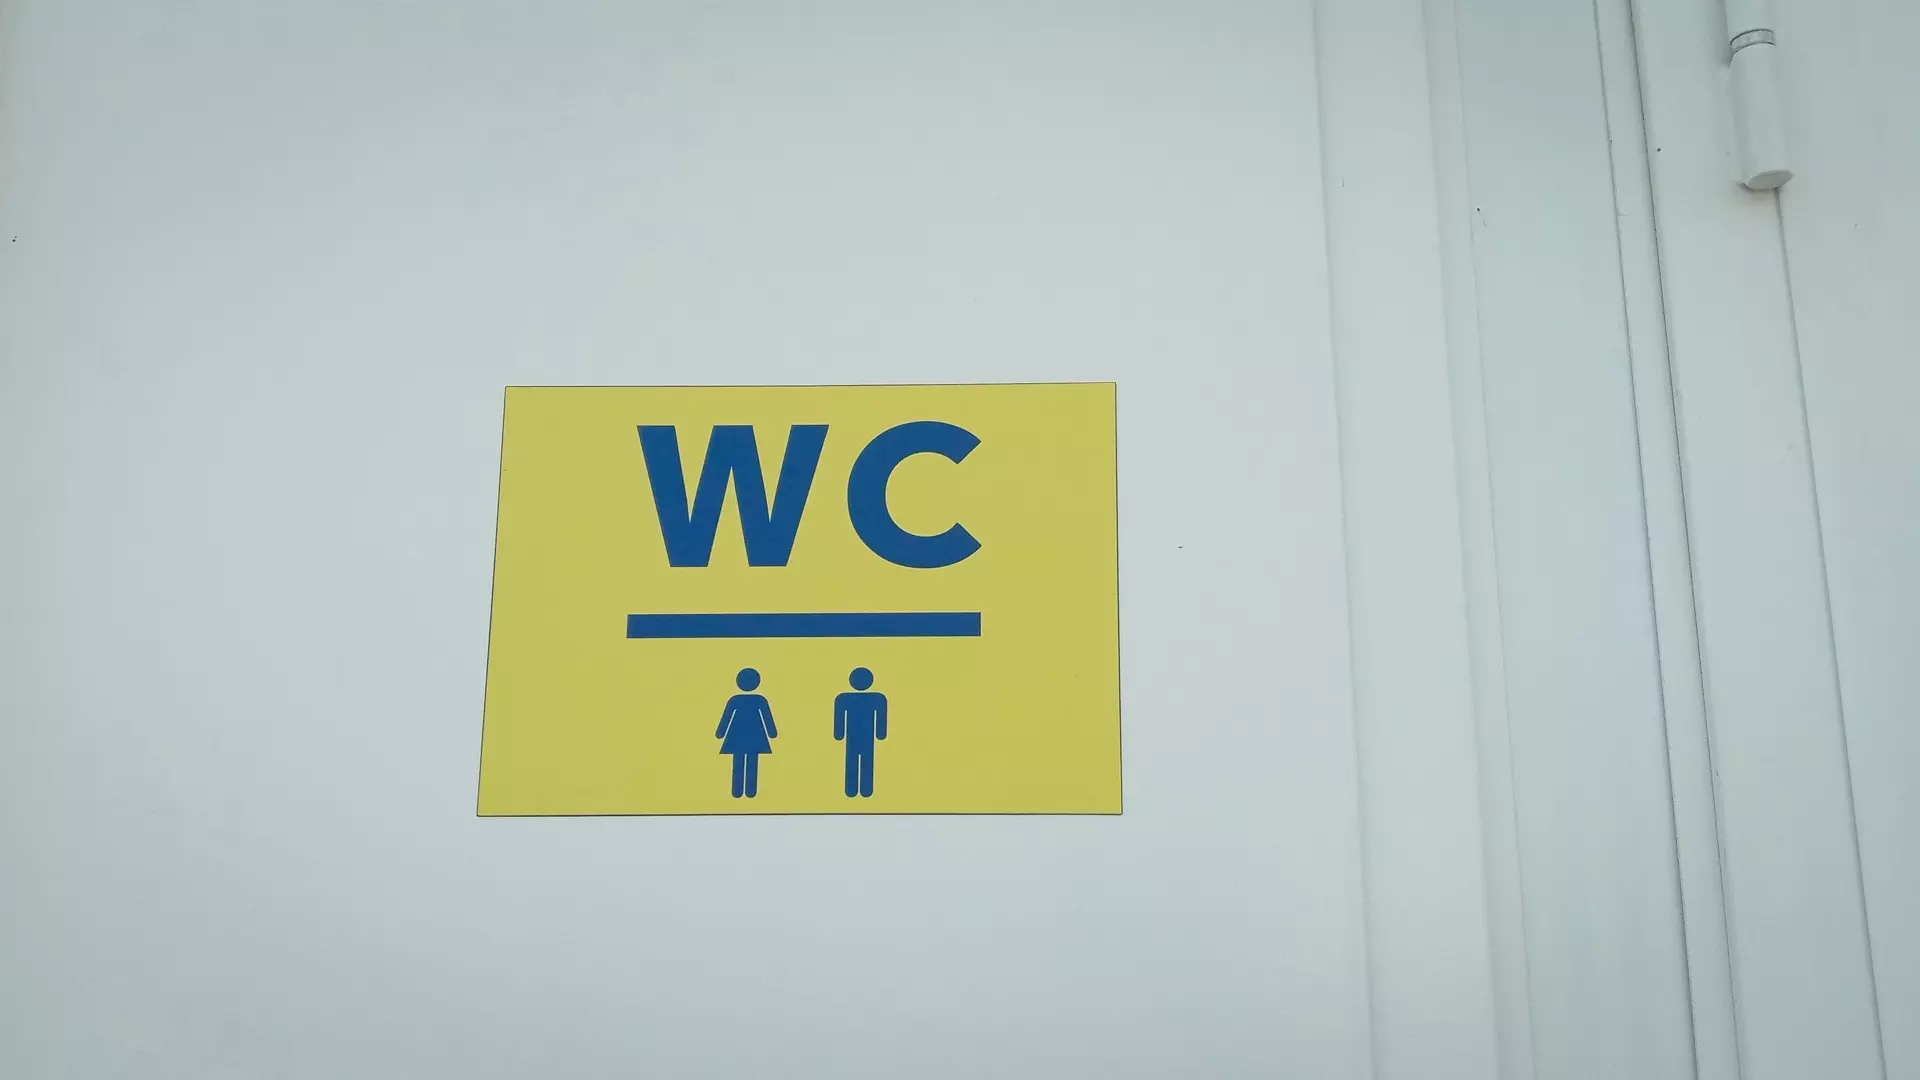 Нижегородский проктолог дал совет по сокращению чтения в туалете нижегородцам